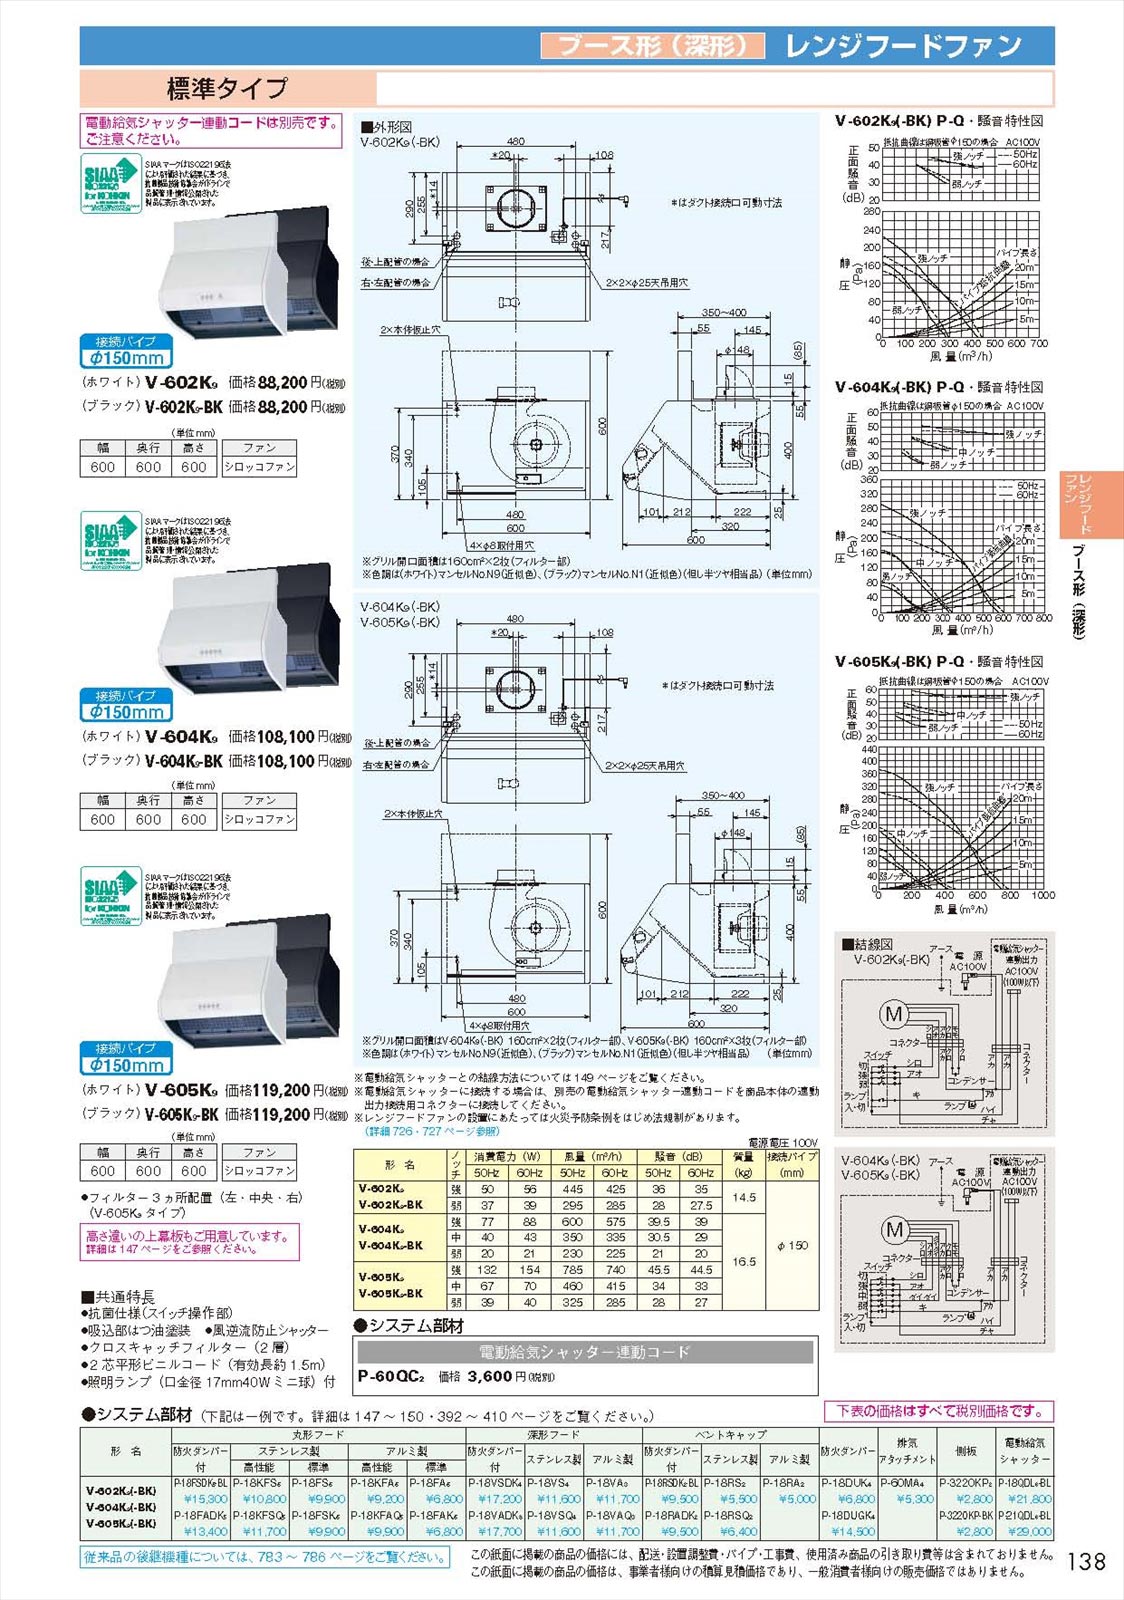 三菱 MITSUBISHI】 三菱 V-603KL8-BL-T レンジフードファン ブース形